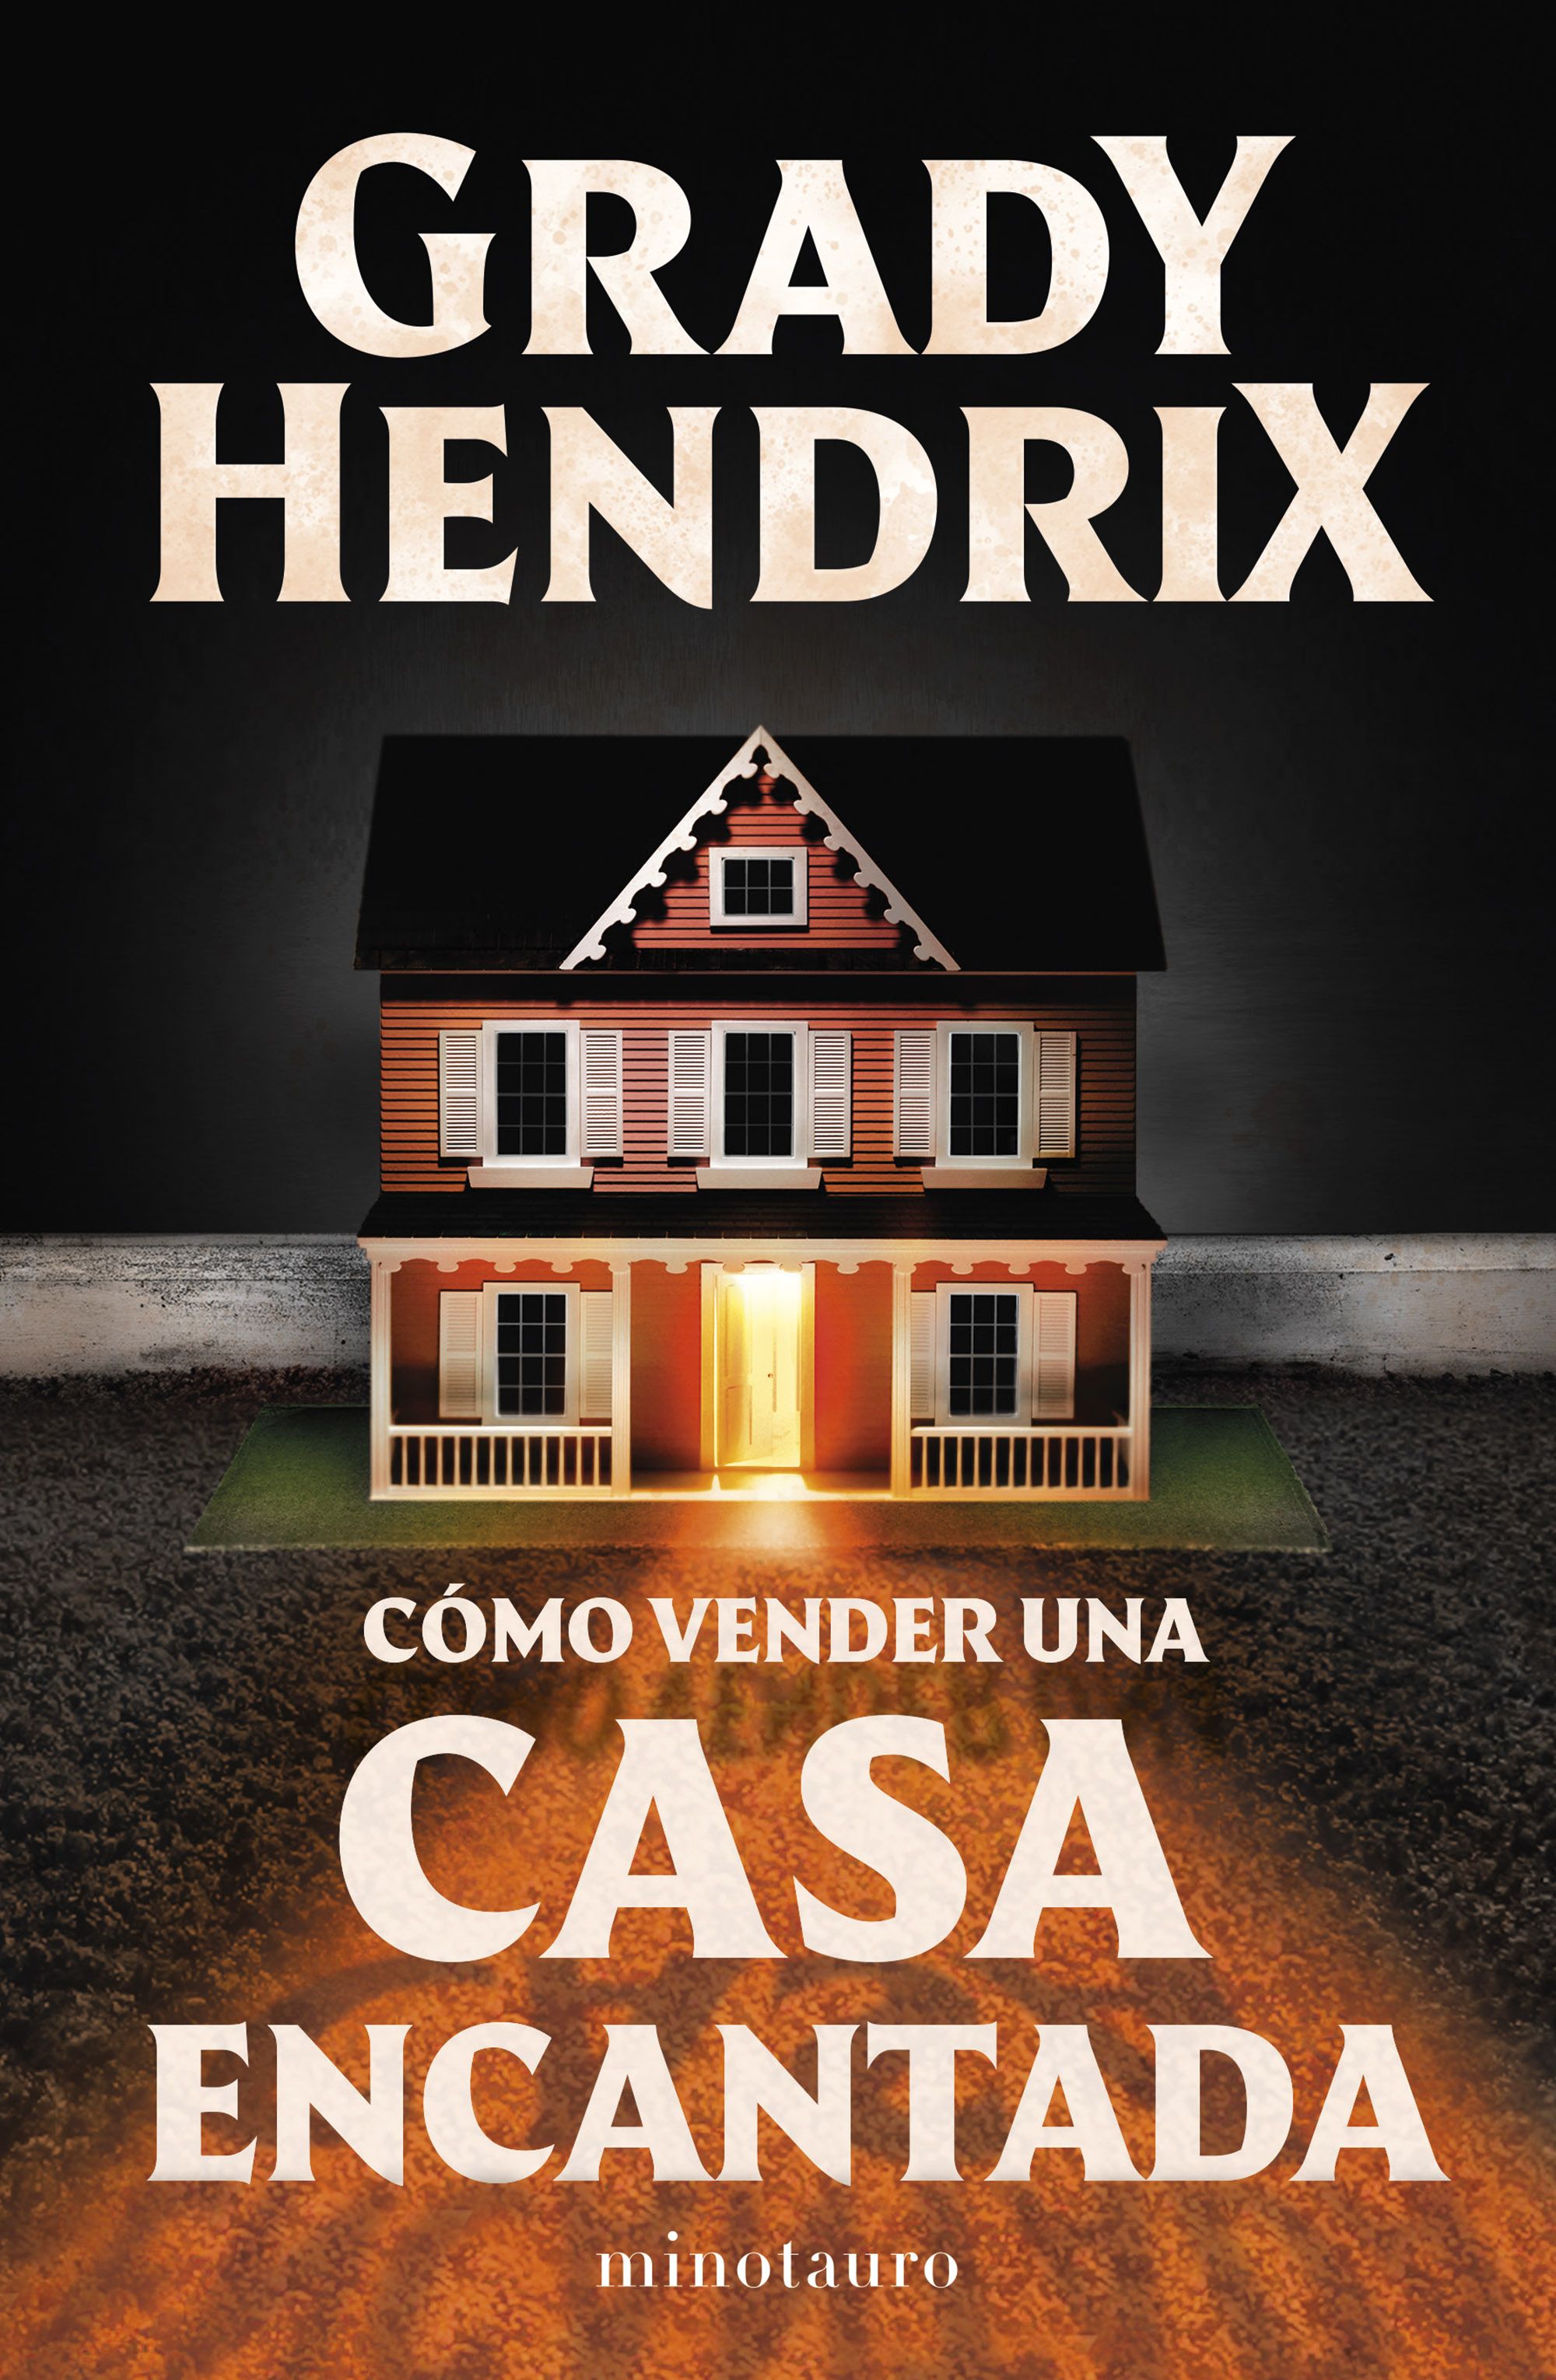 Bryan Ledezma on Instagram: Reseña de Cómo vender una casa encantada de  Grady Hendrix. Este libro lo leí junto con mi club de lectura. Si se  quieren unir para futuras lecturas, el